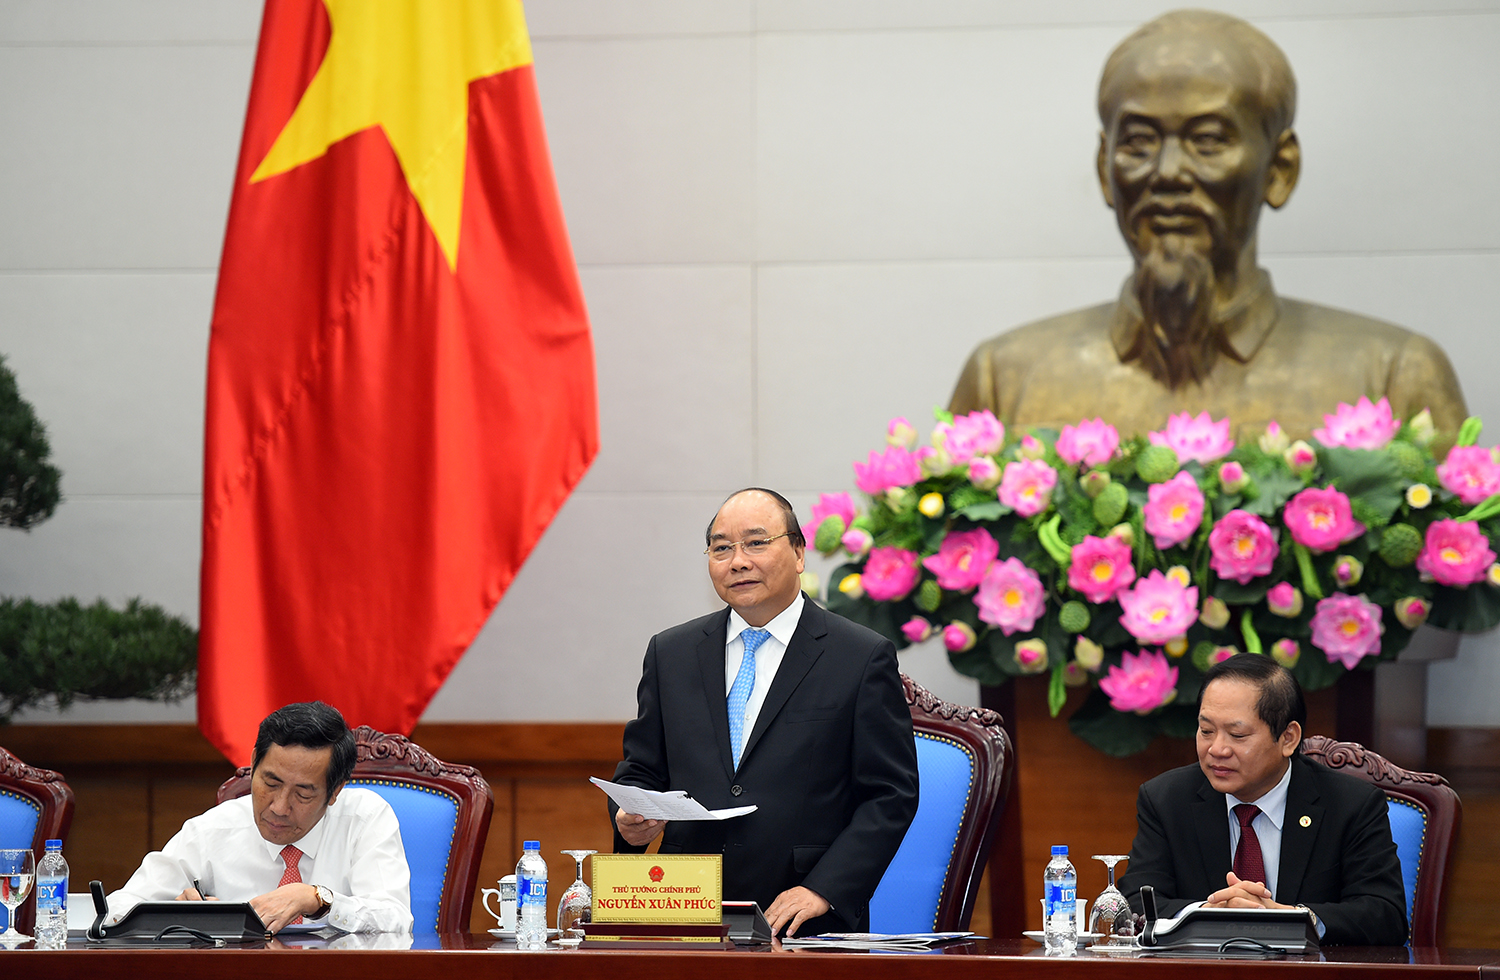 Thủ tướng cho rằng, báo chí là cầu nối hữu hiệu giữa doanh nghiệp và Chính phủ. Ảnh: VGP/Quang Hiếu.